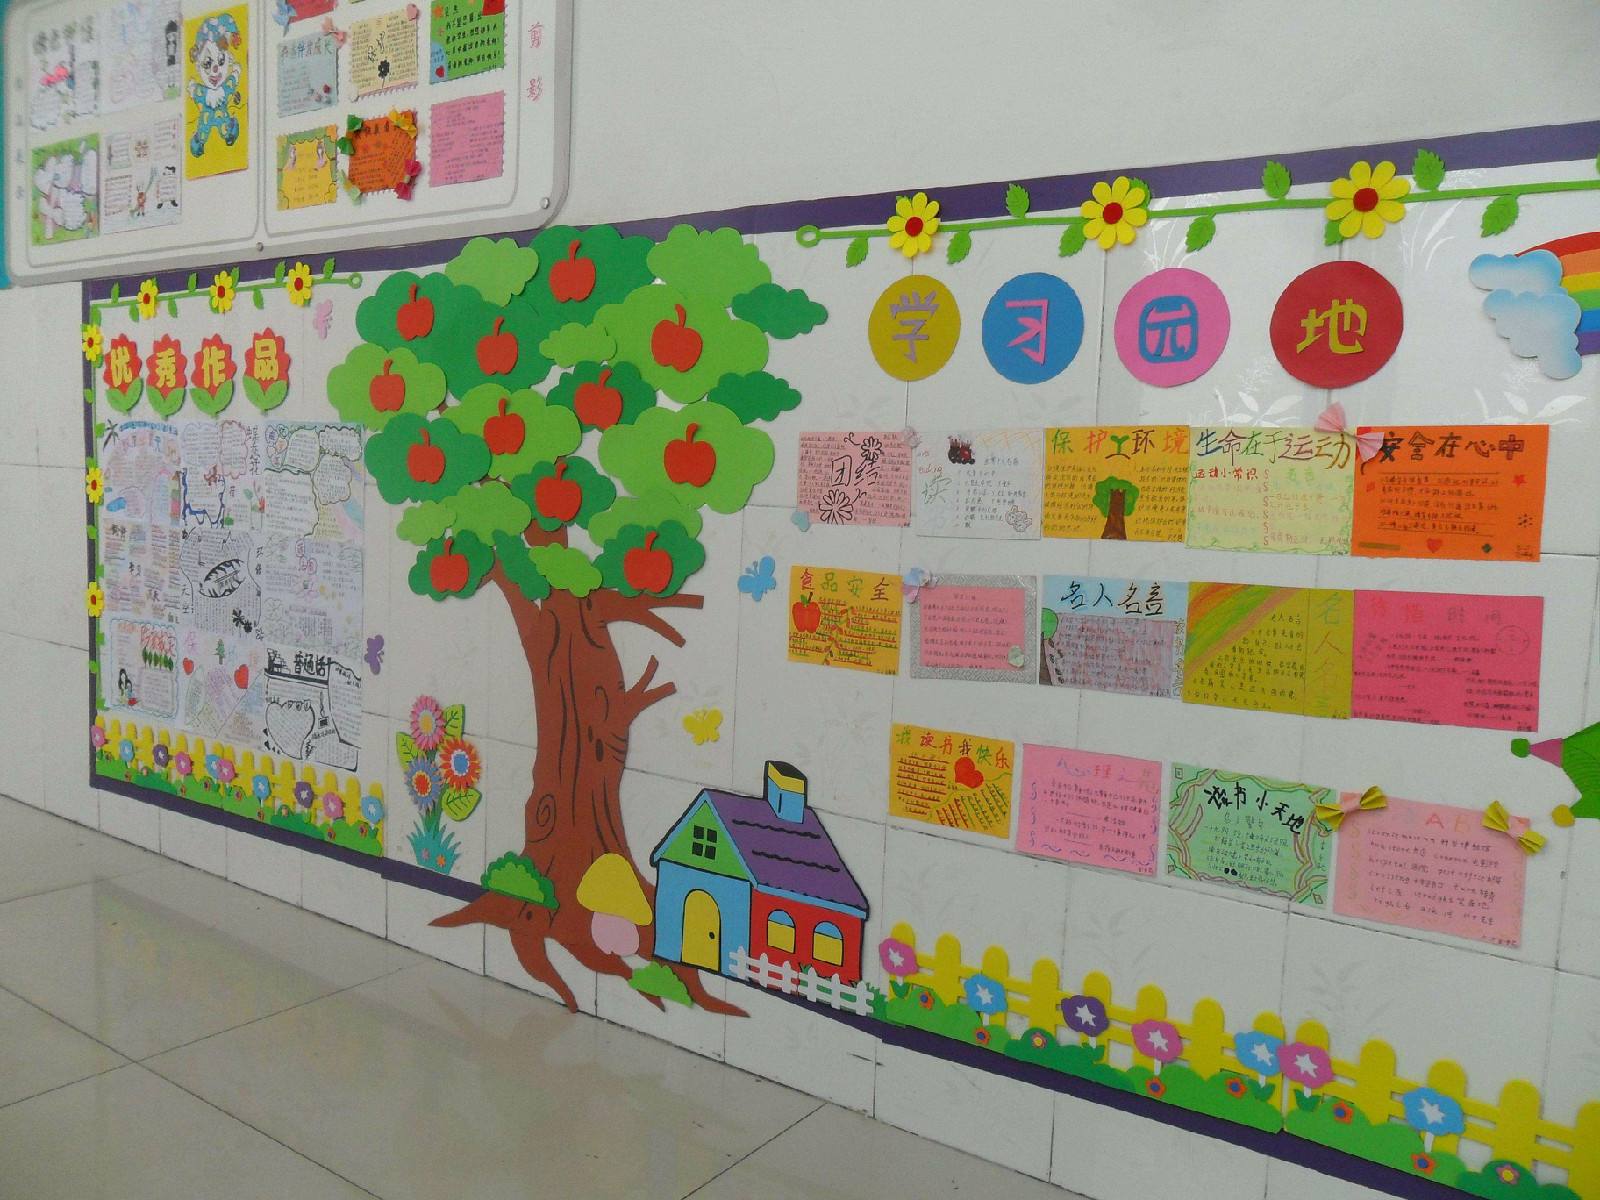 精美的小学教室布置图片_漂亮的班级文化墙_微信公众号文章